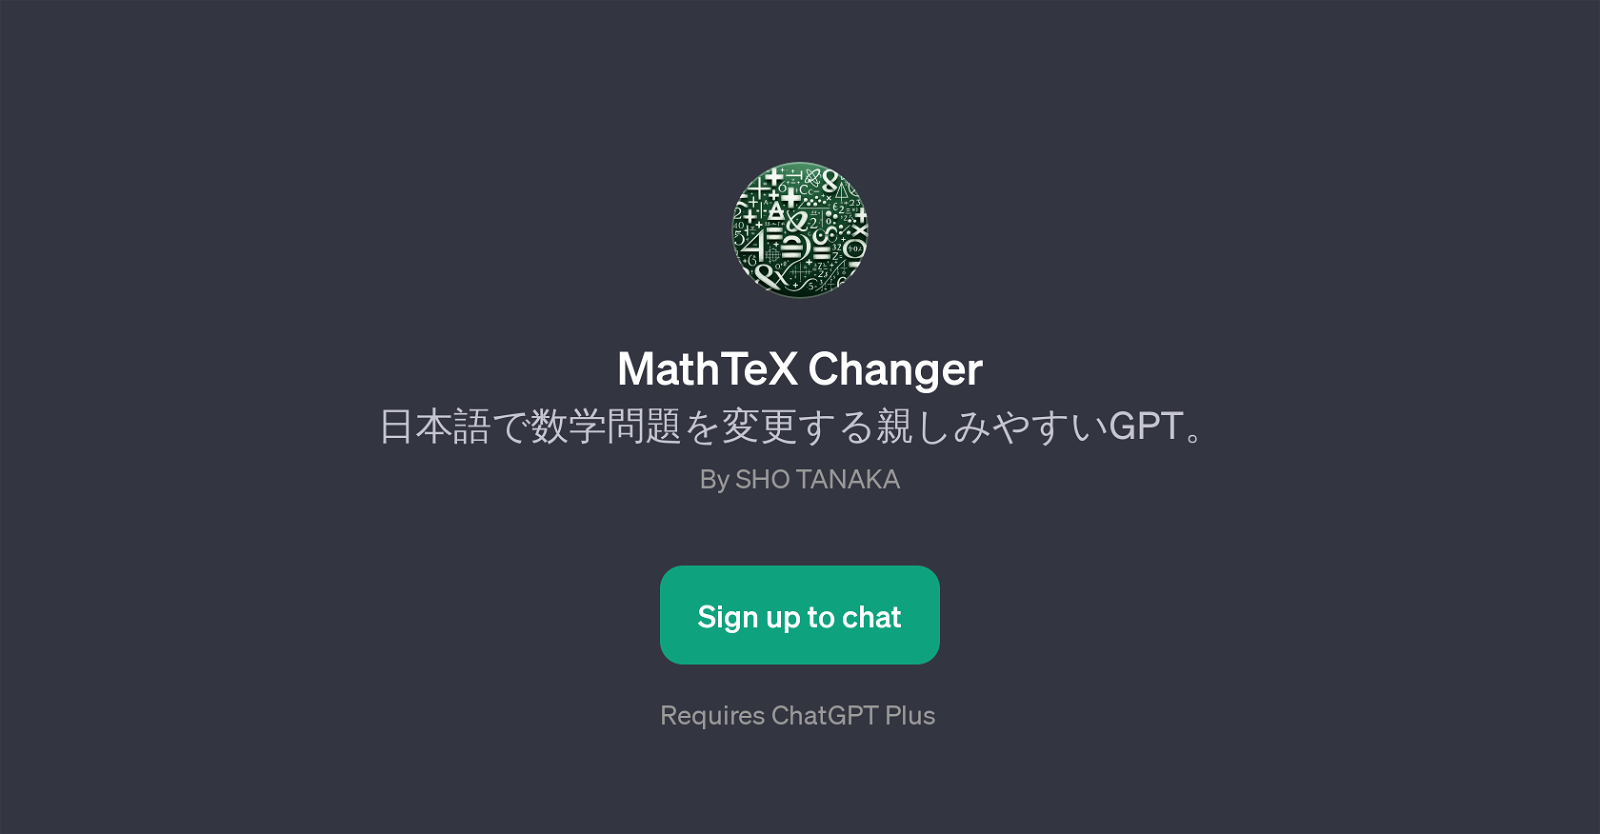 MathTeX Changer website